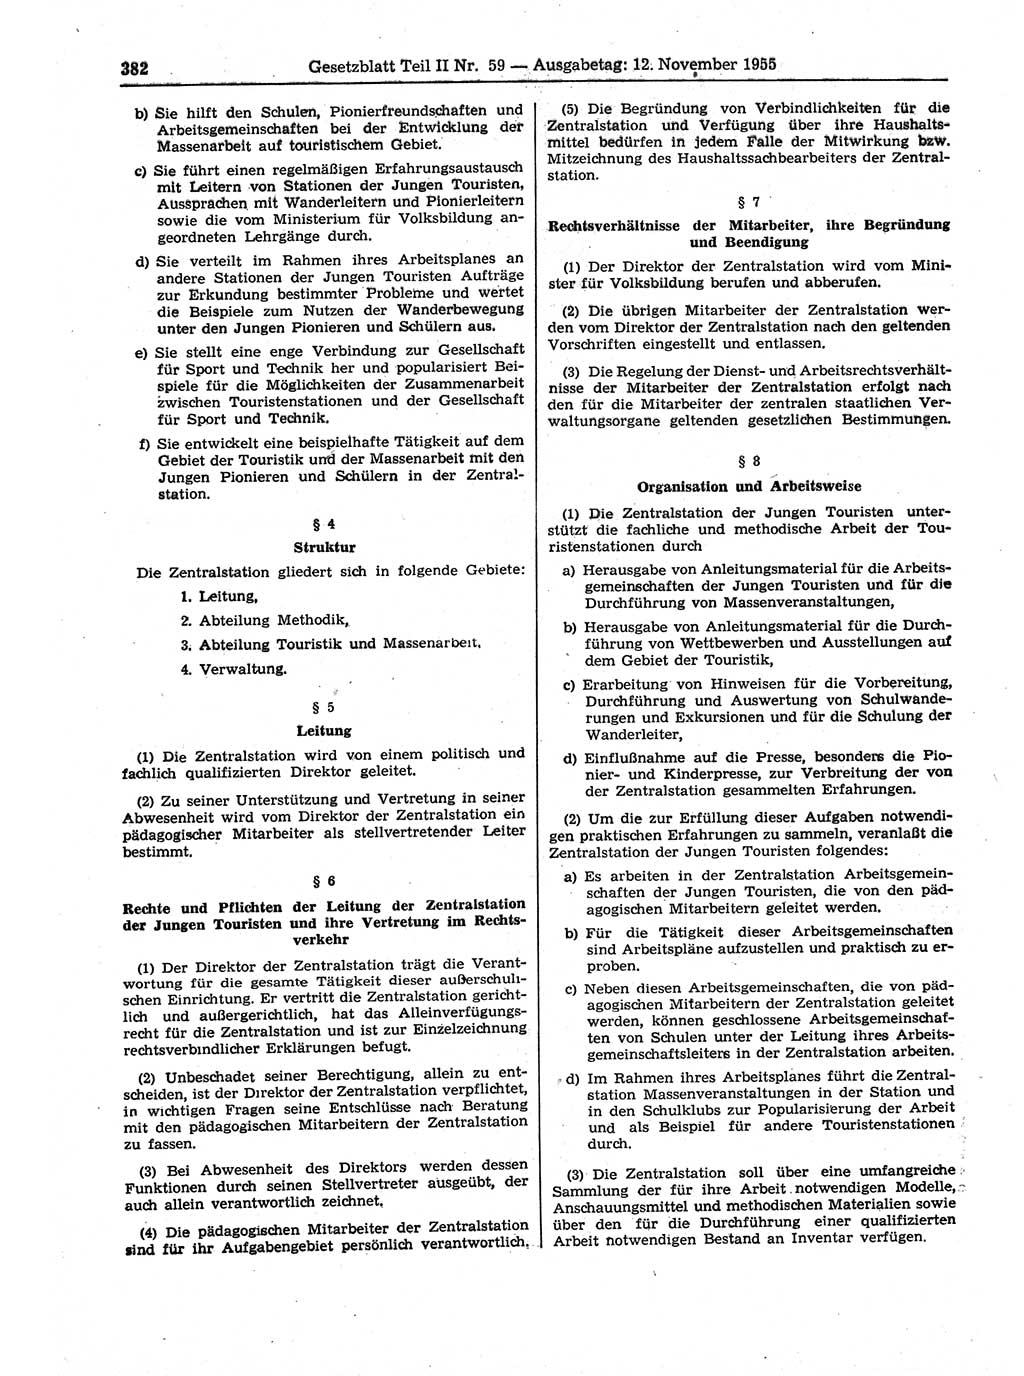 Gesetzblatt (GBl.) der Deutschen Demokratischen Republik (DDR) Teil ⅠⅠ 1955, Seite 382 (GBl. DDR ⅠⅠ 1955, S. 382)